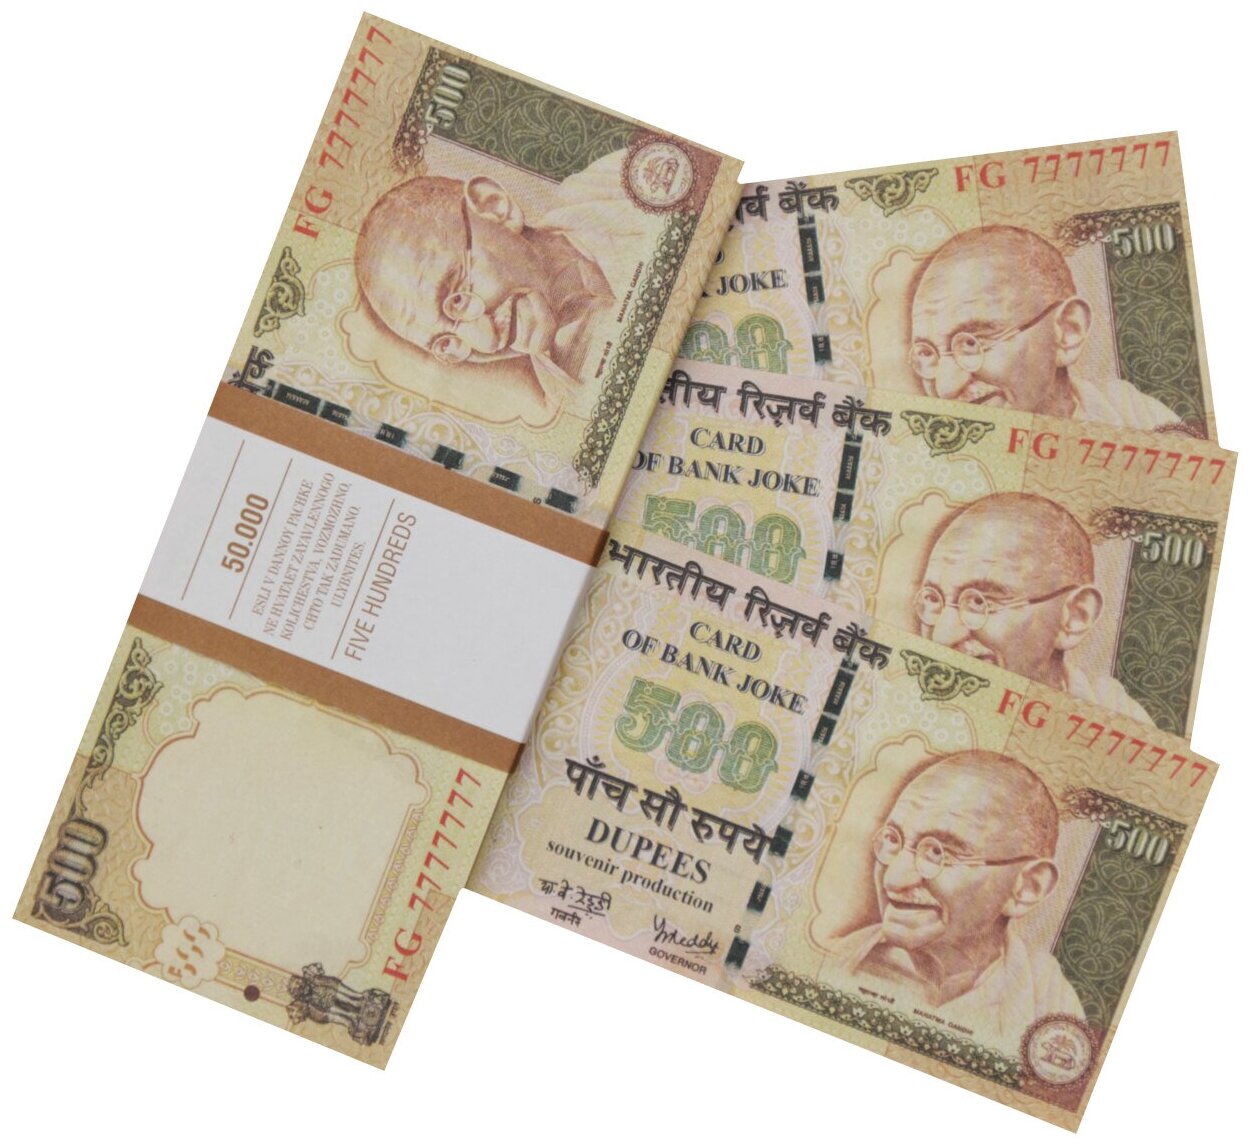 Забавная пачка денег 500 индийских рупий, сувенирные деньги для розыгрышей и приколов